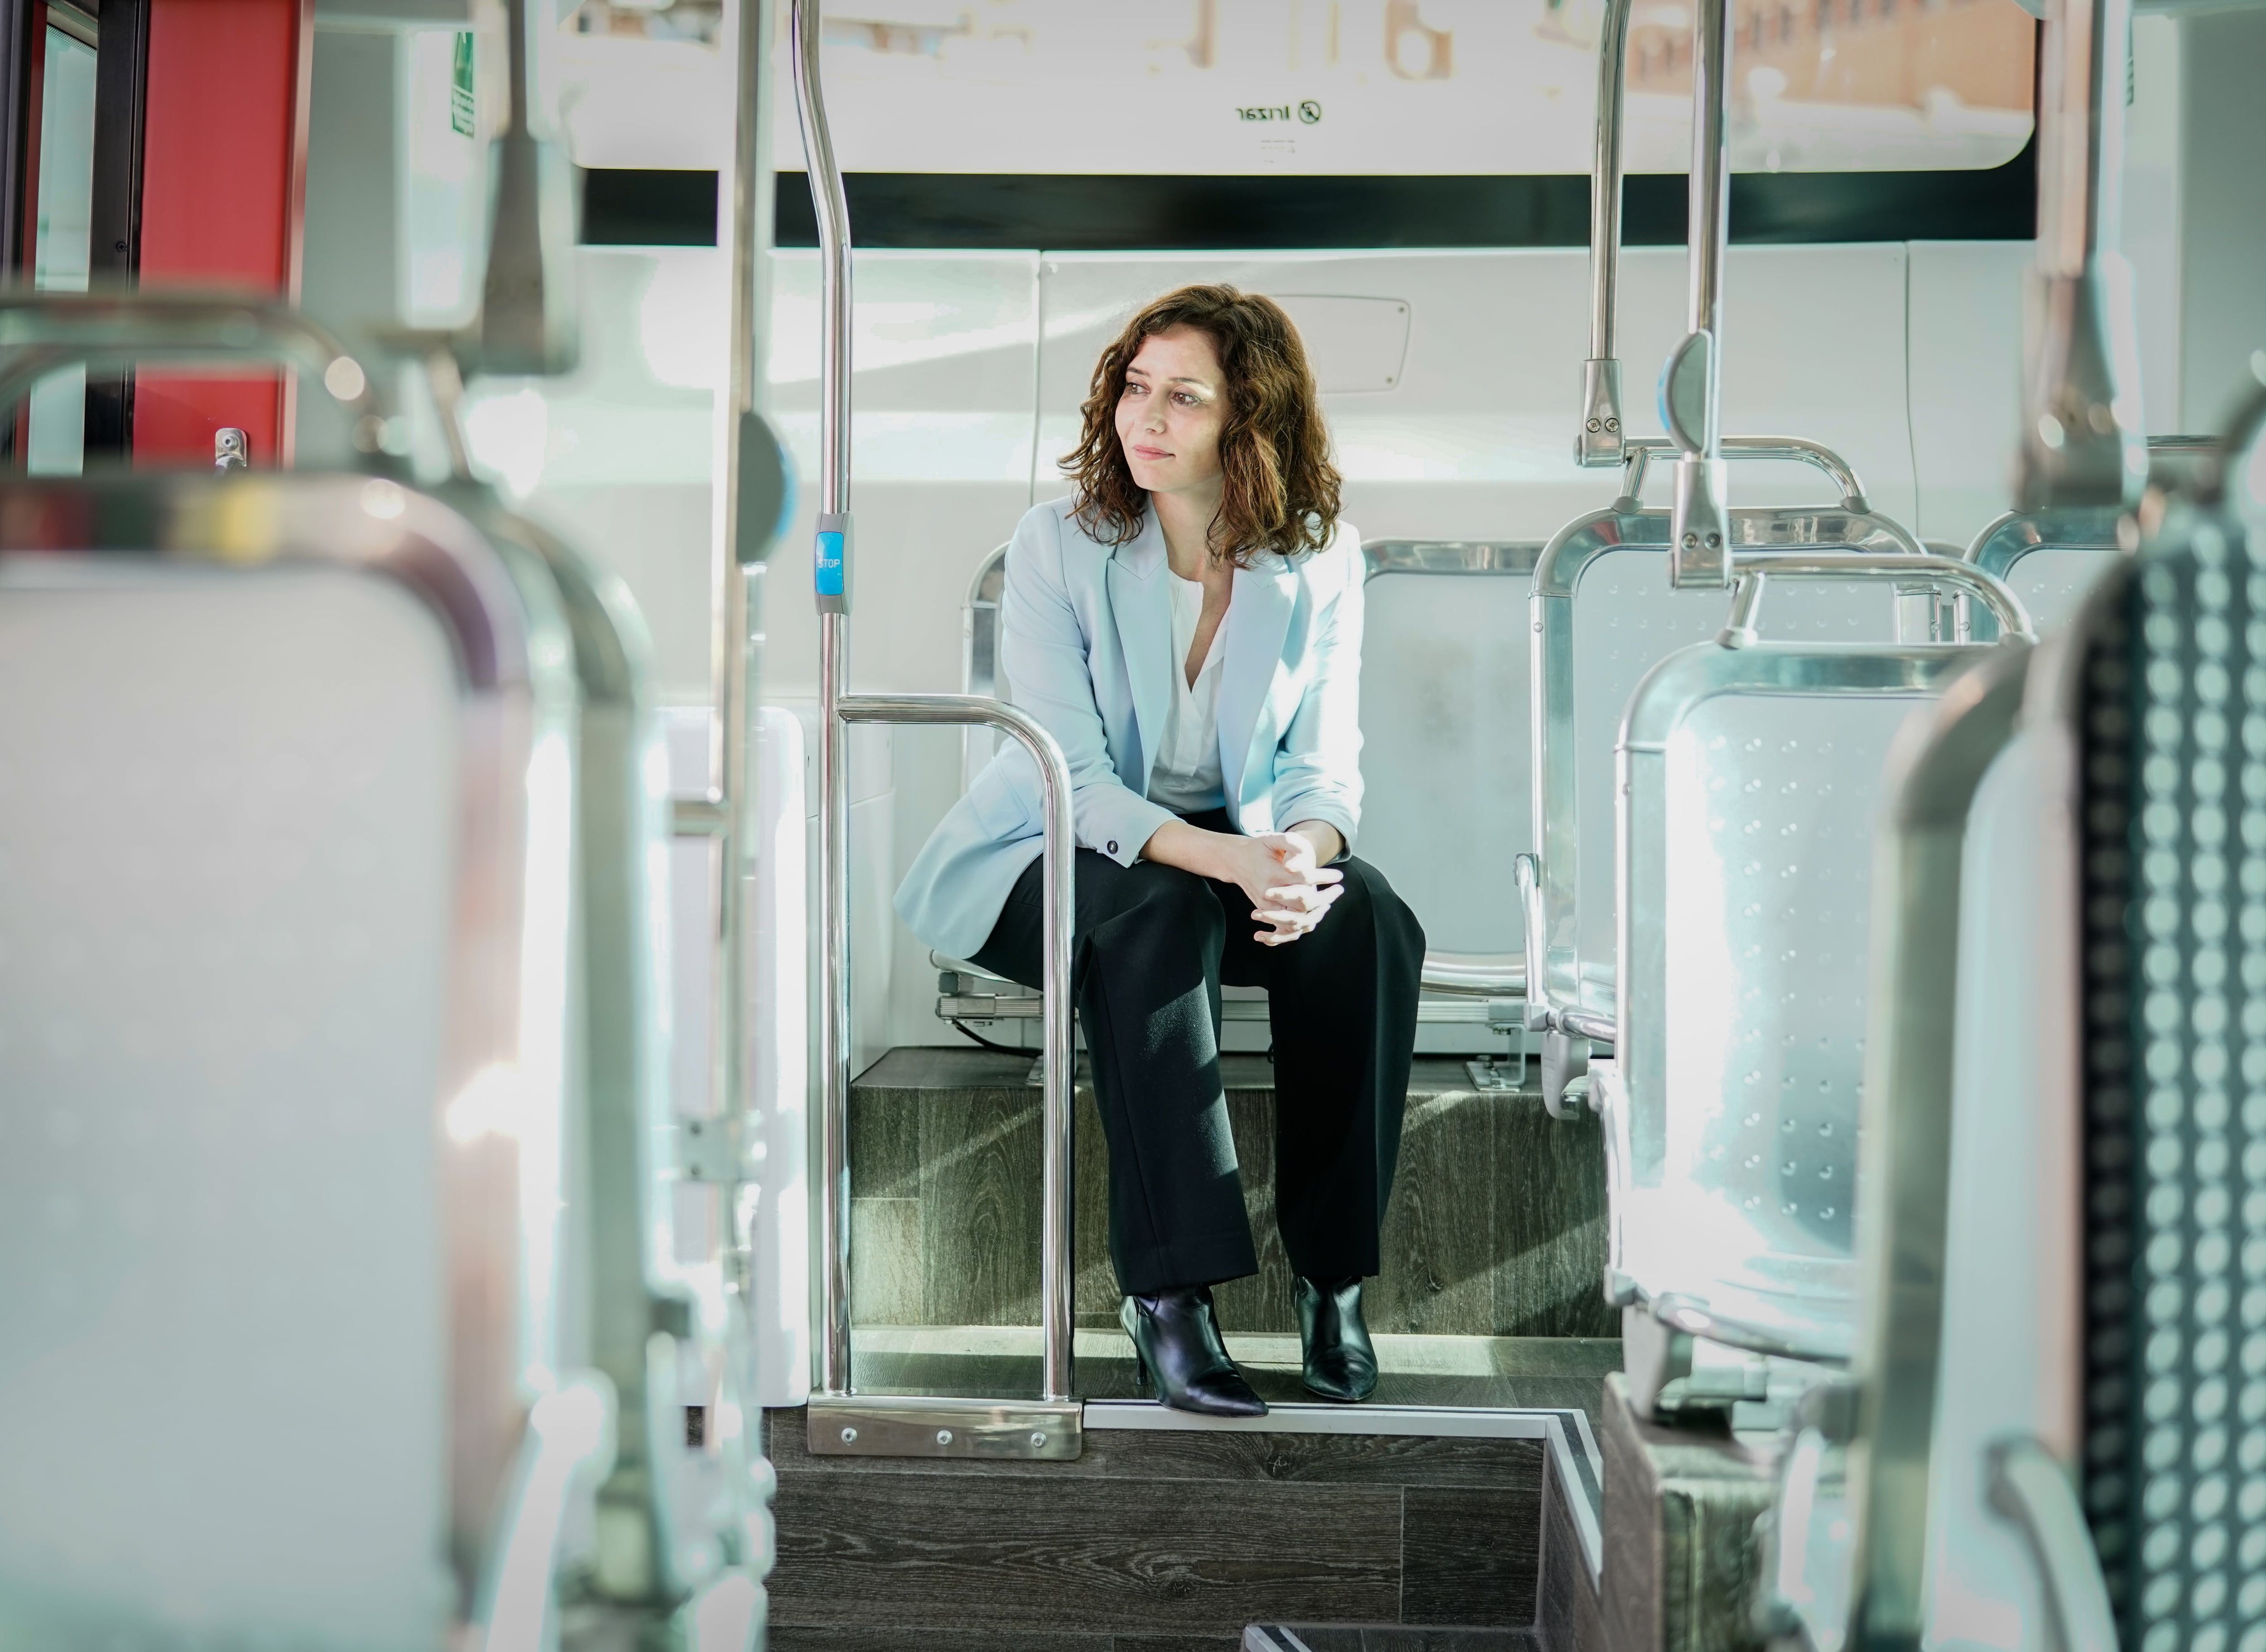 La presidenta de la Comunidad de Madrid, Isabel Díaz Ayuso, montada en un autobús